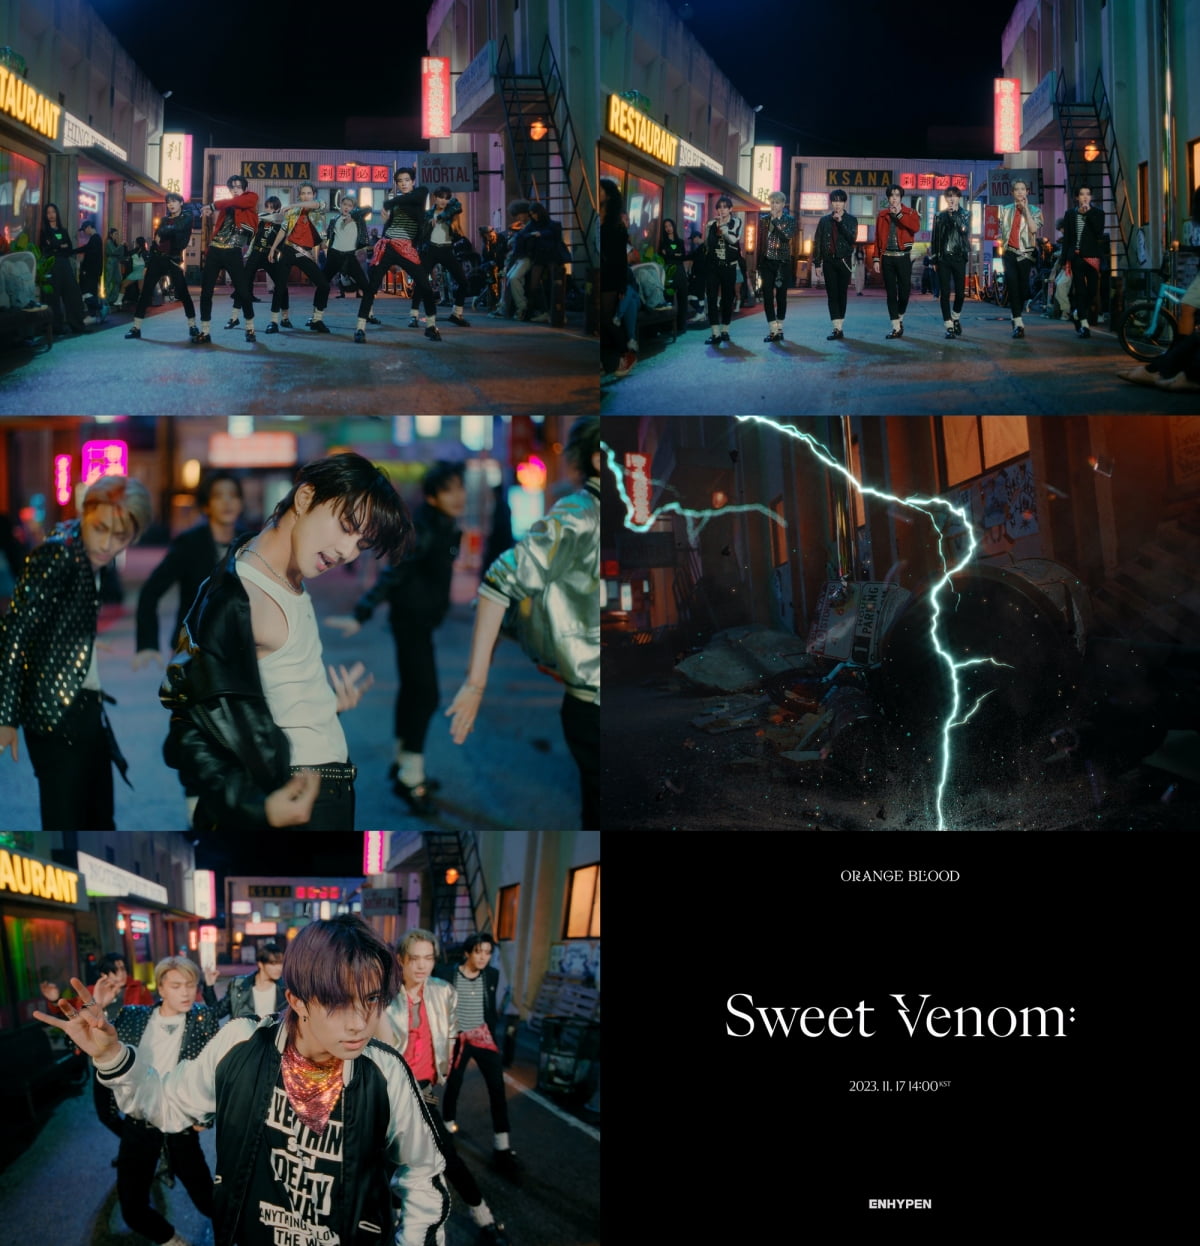 Enhyphen releases second teaser for 'Sweet Venom' MV